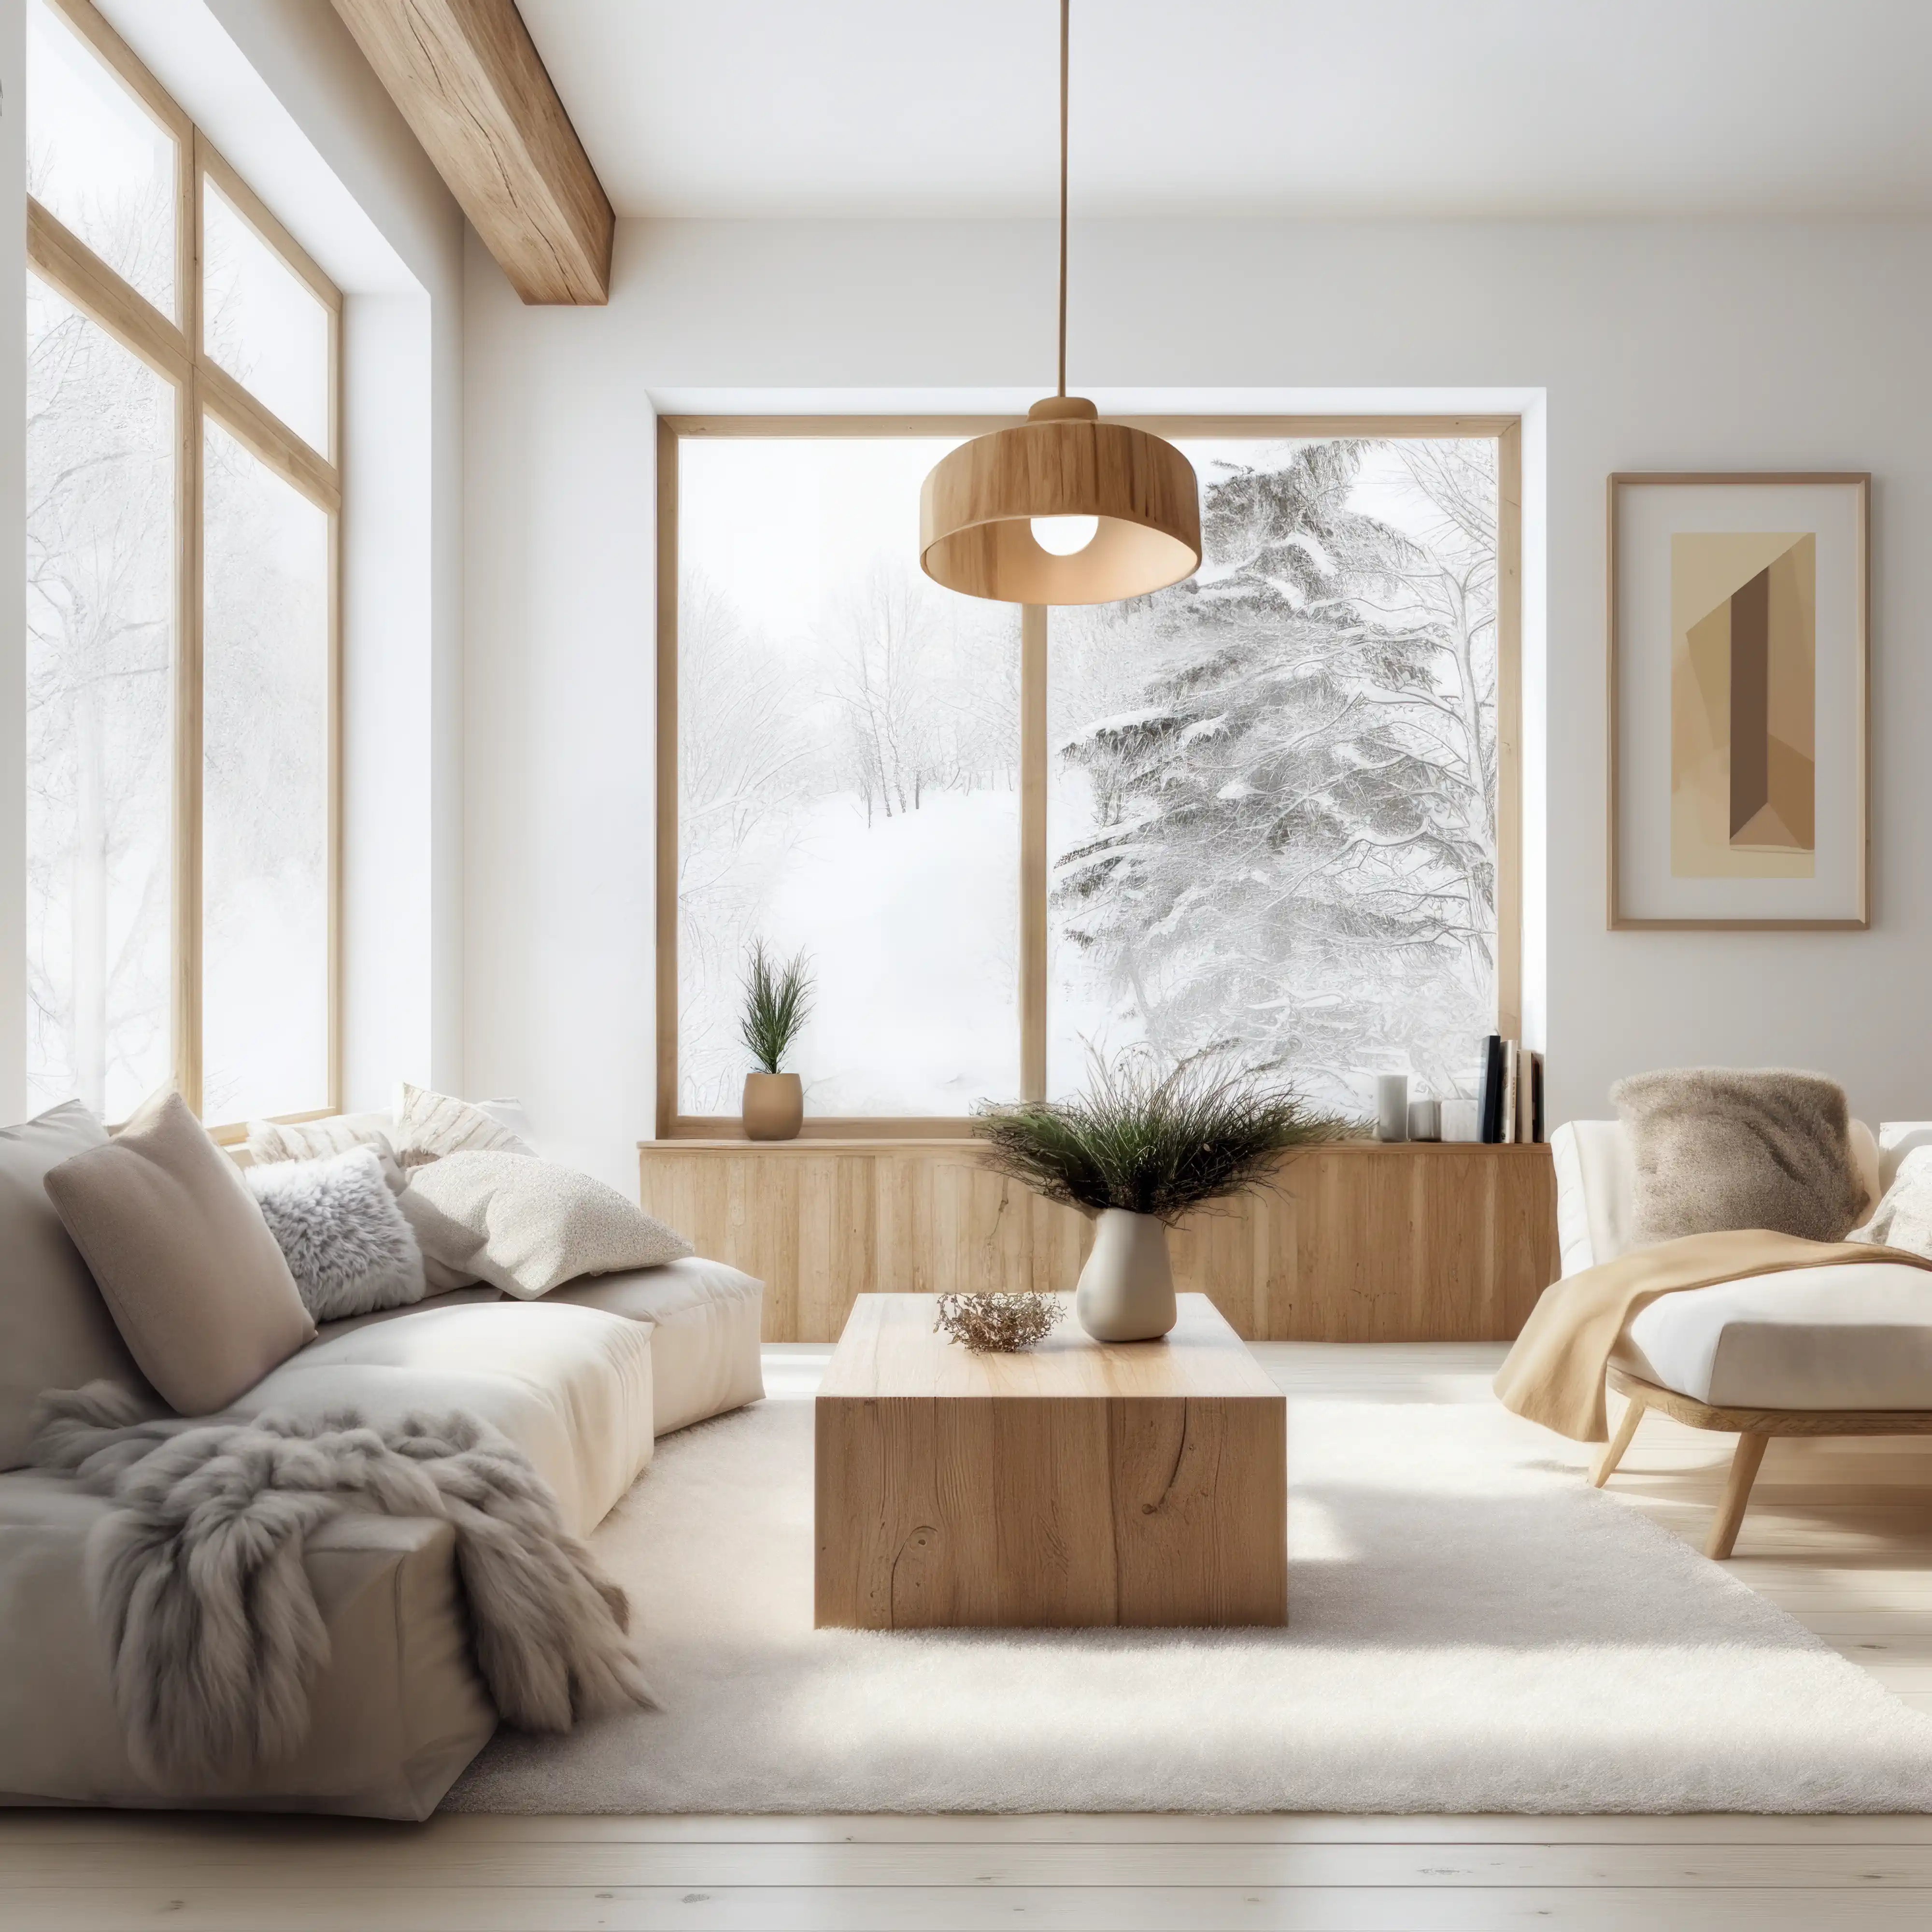 Salon d'hiver confortable avec une grande fenêtre montrant des arbres enneigés, intérieur signé Sarah Brown Design